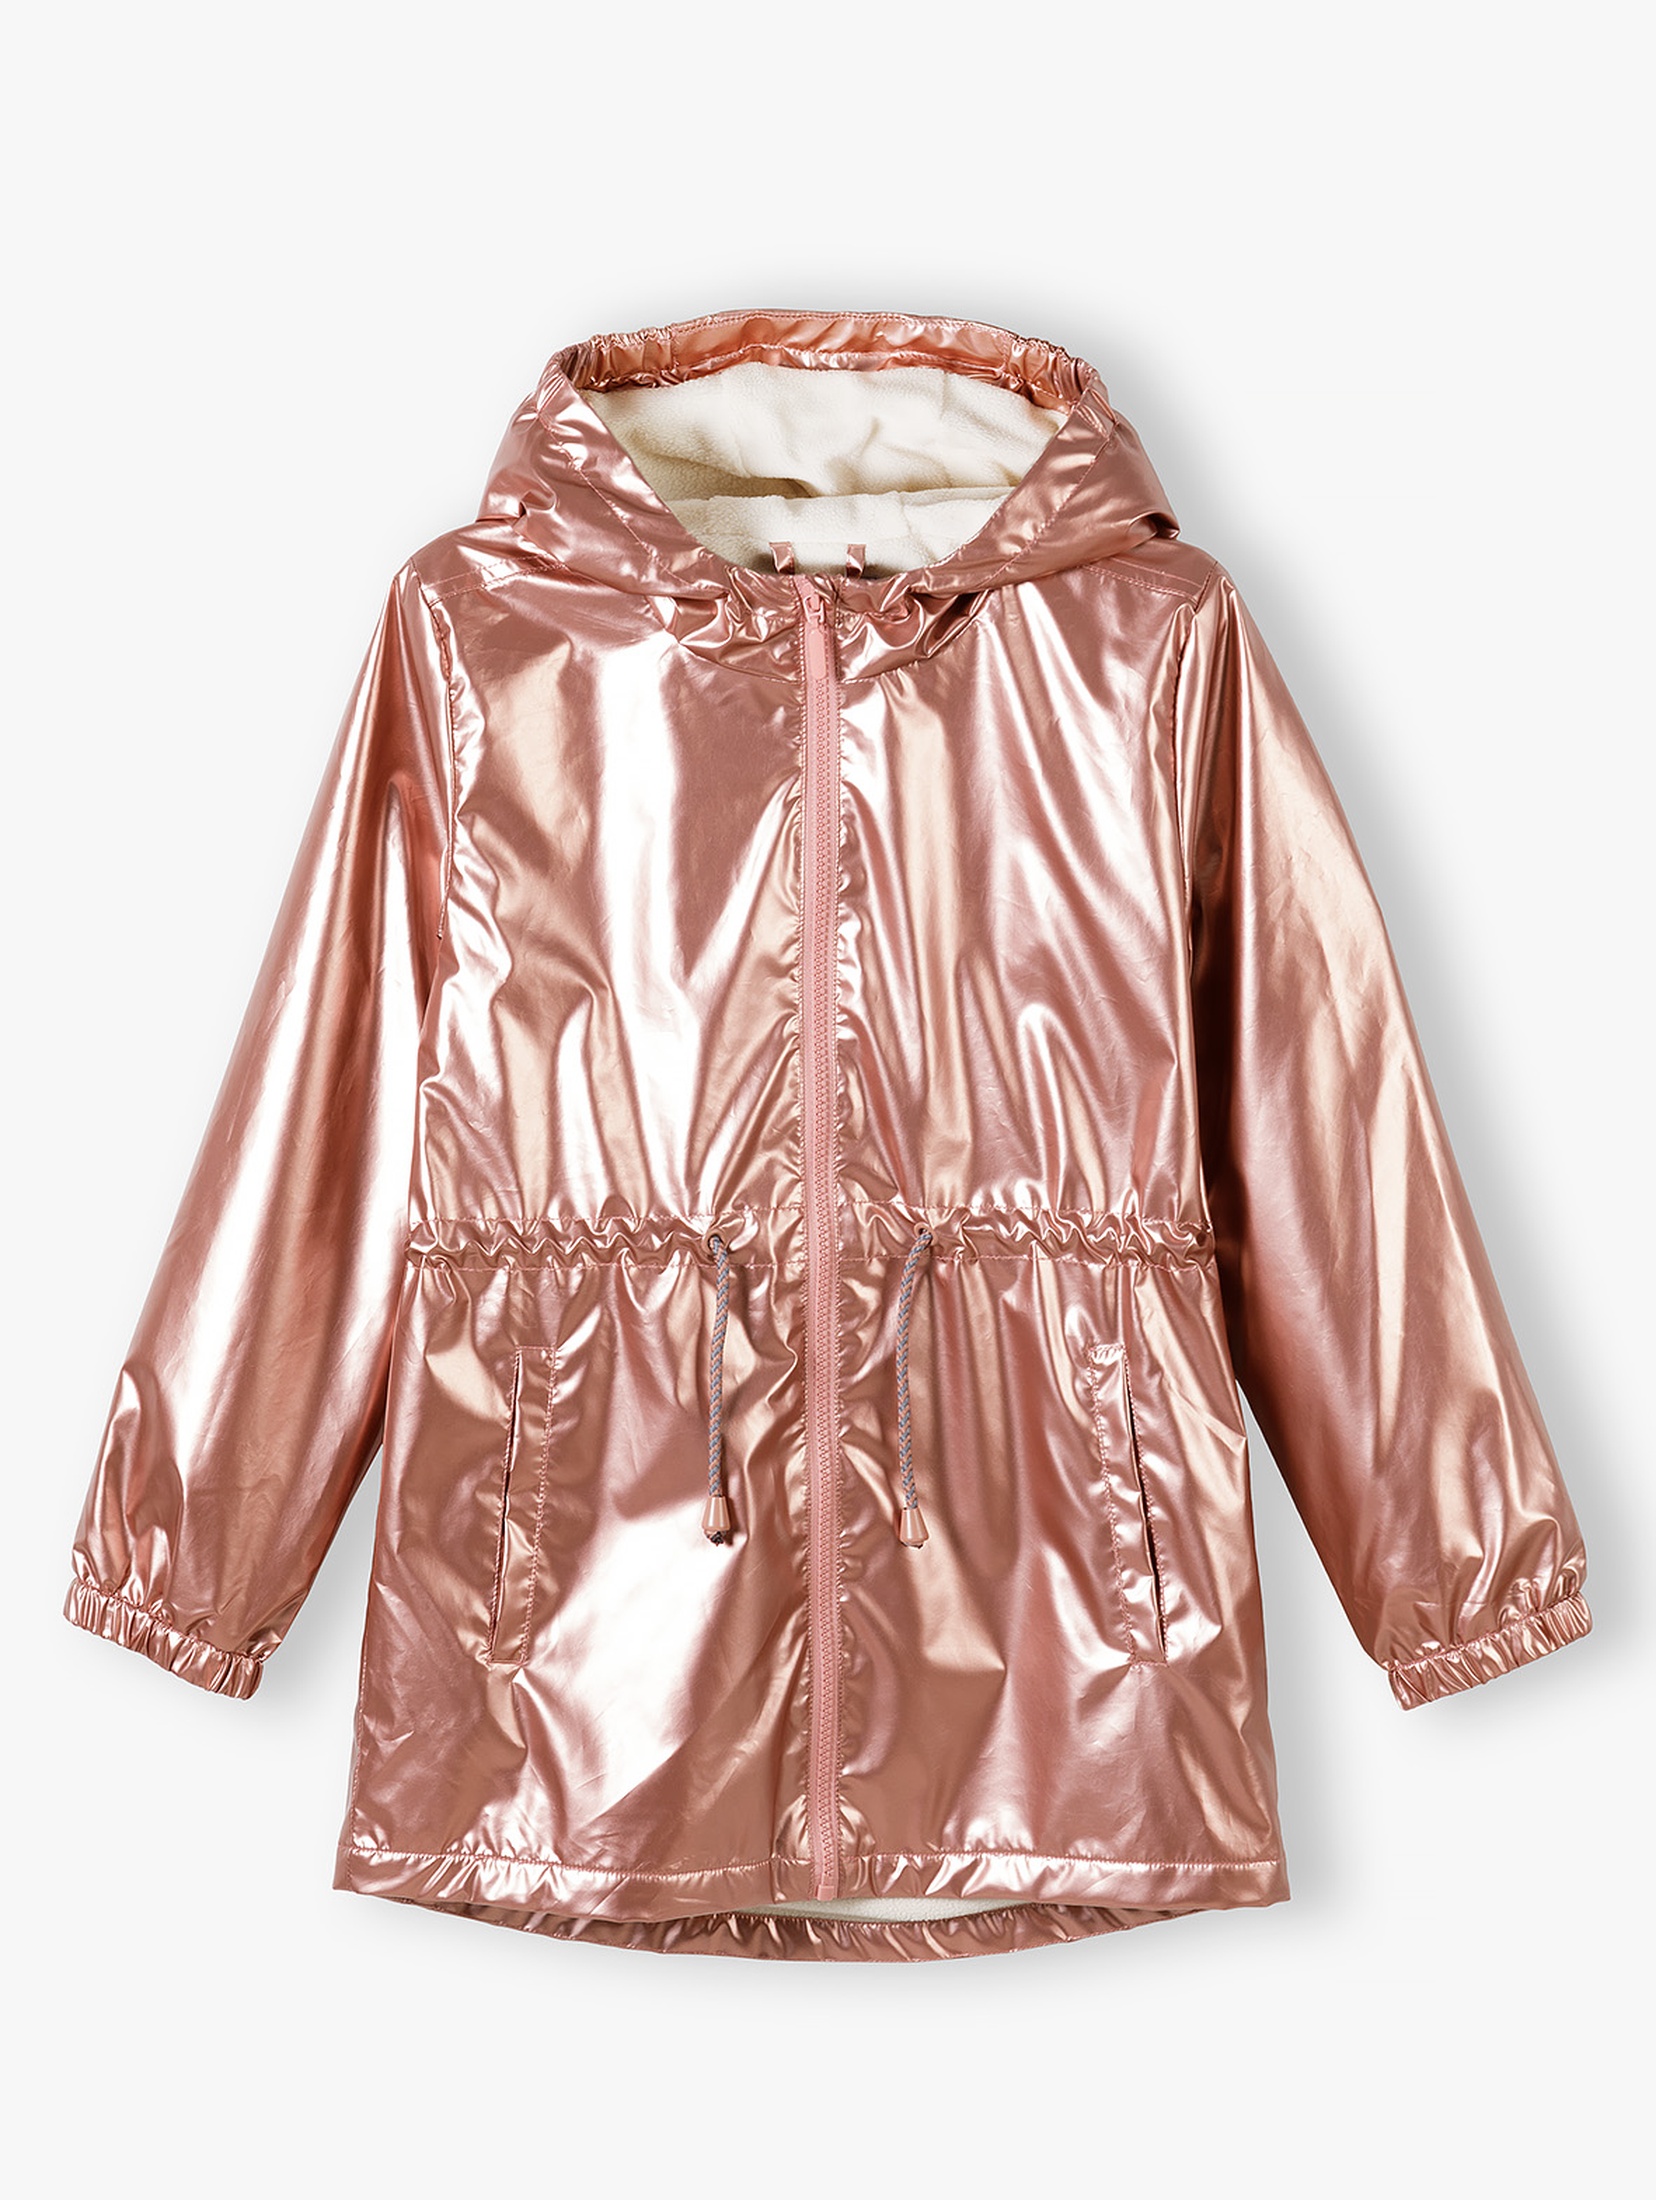 Metaliczna różowa kurtka przejściowa - parka dla dziewczynki